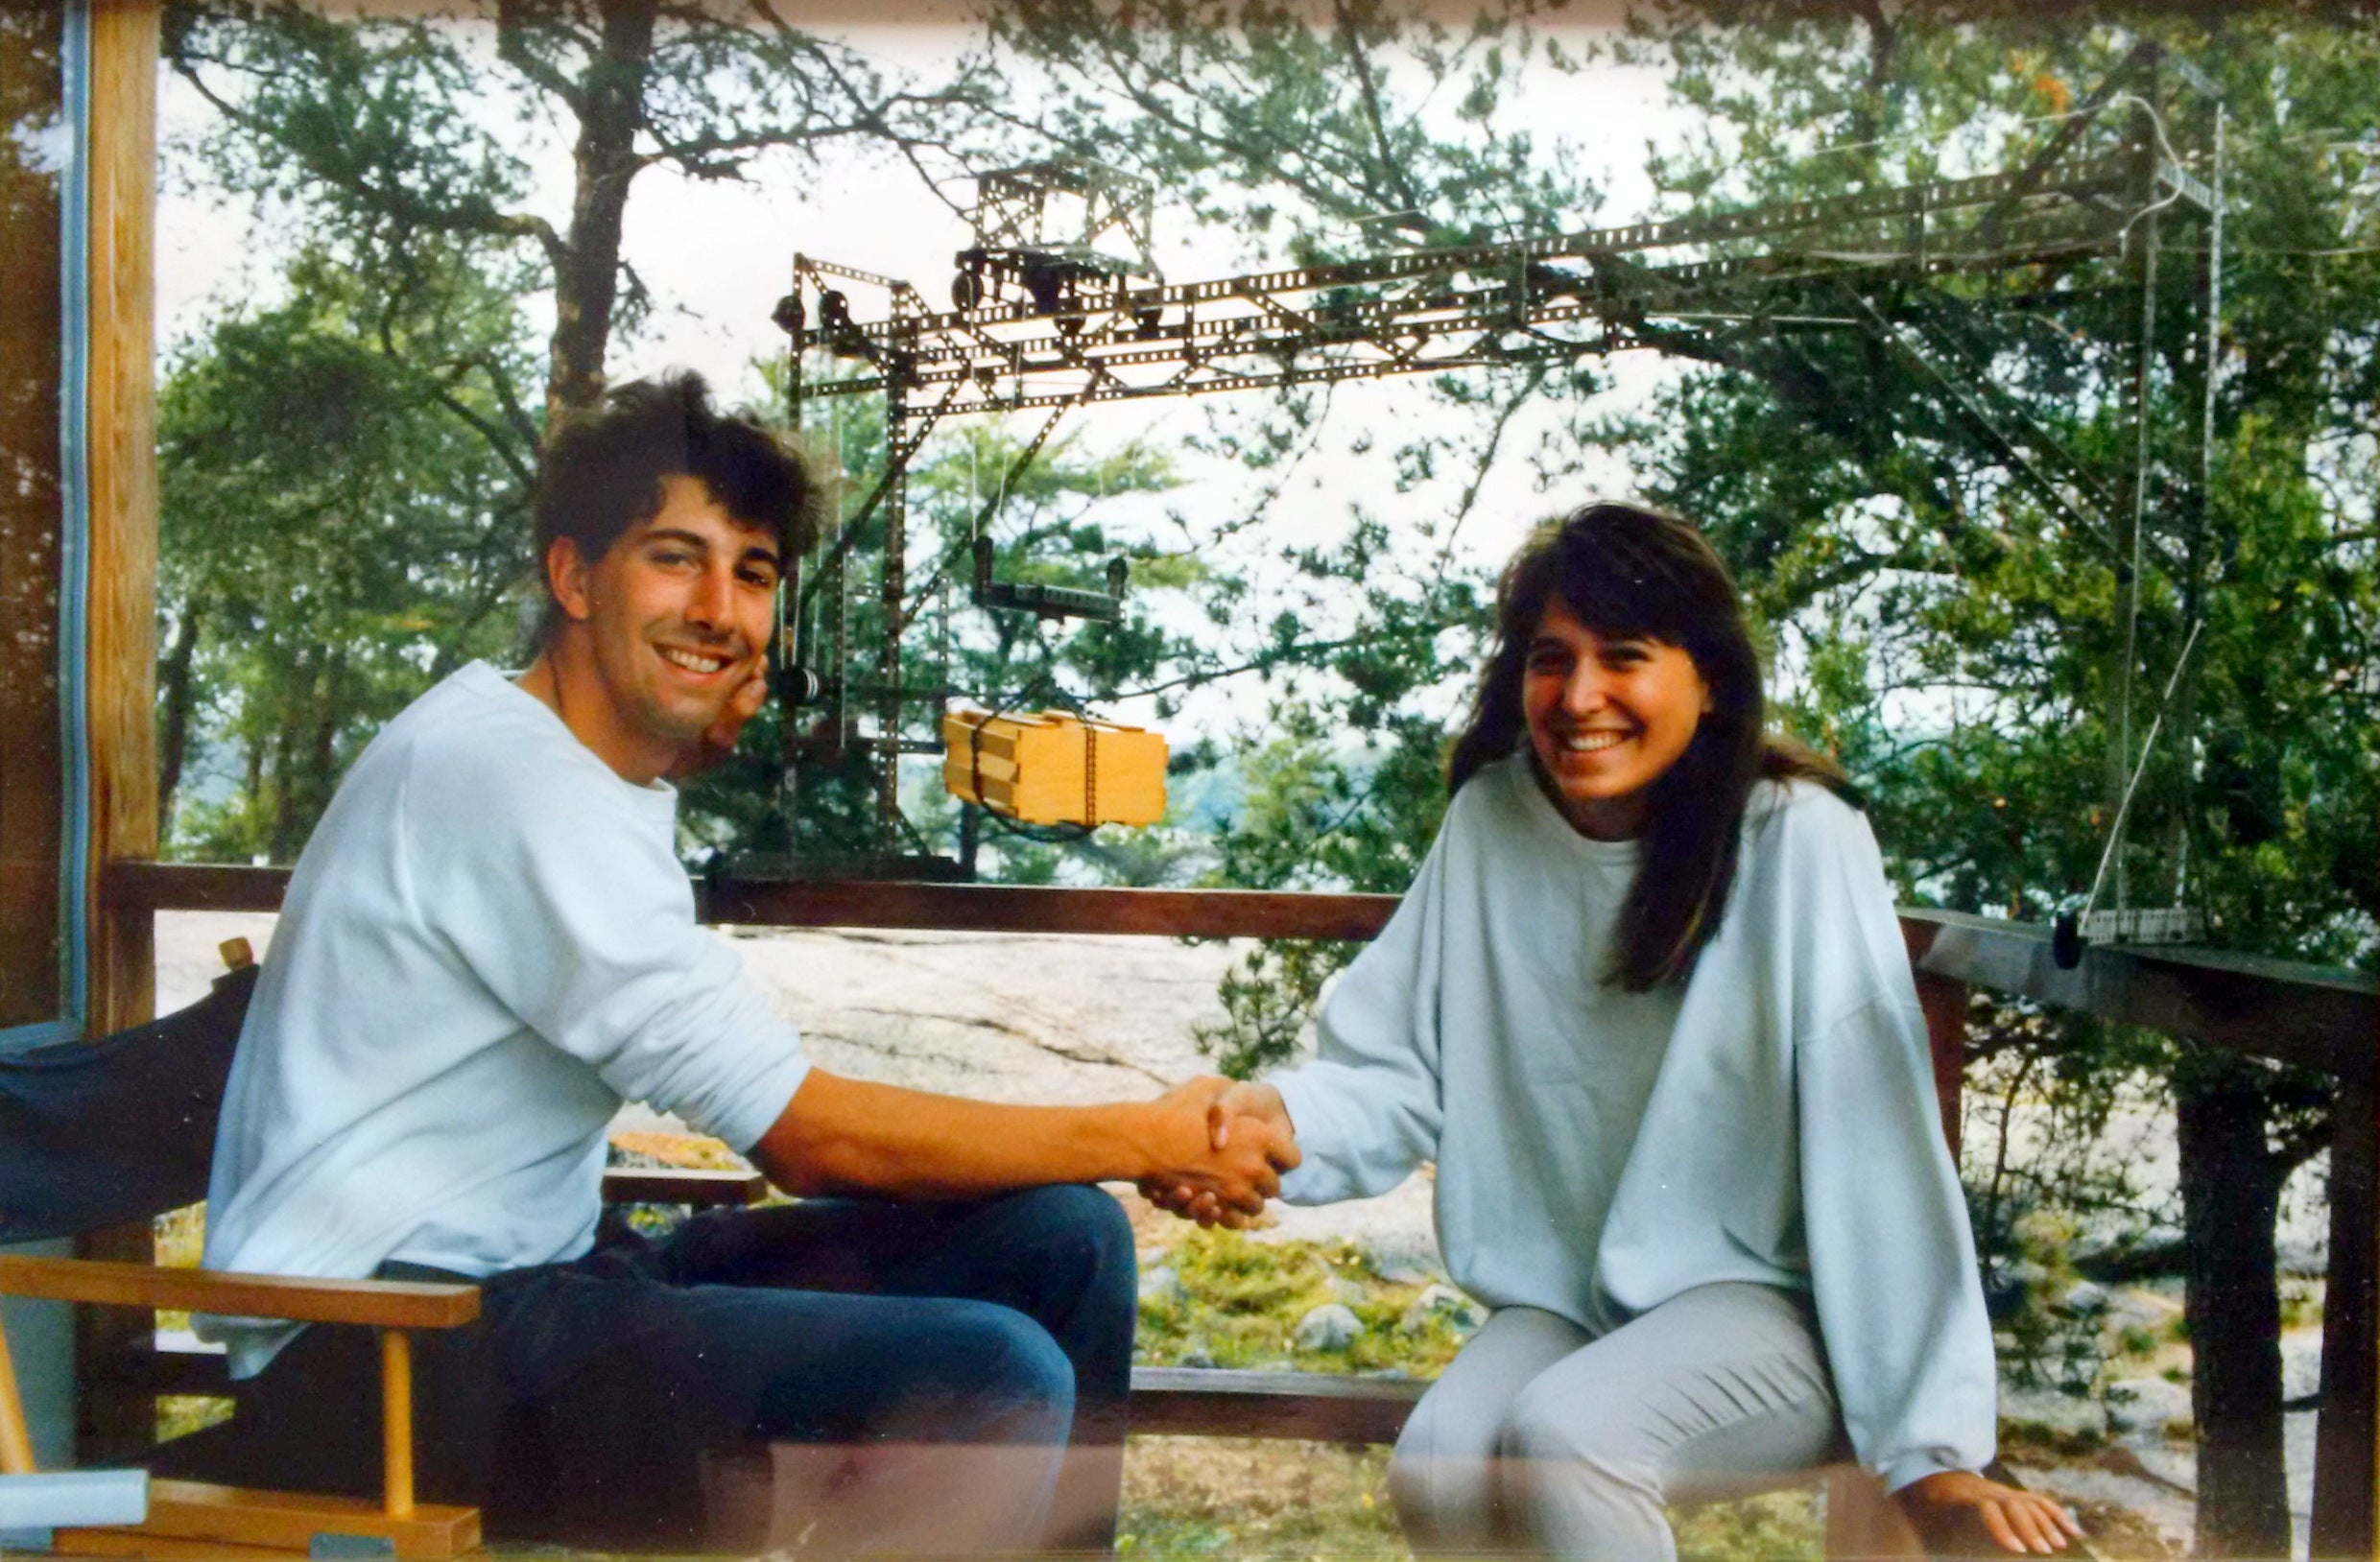 Carl and Jennifer in 1987